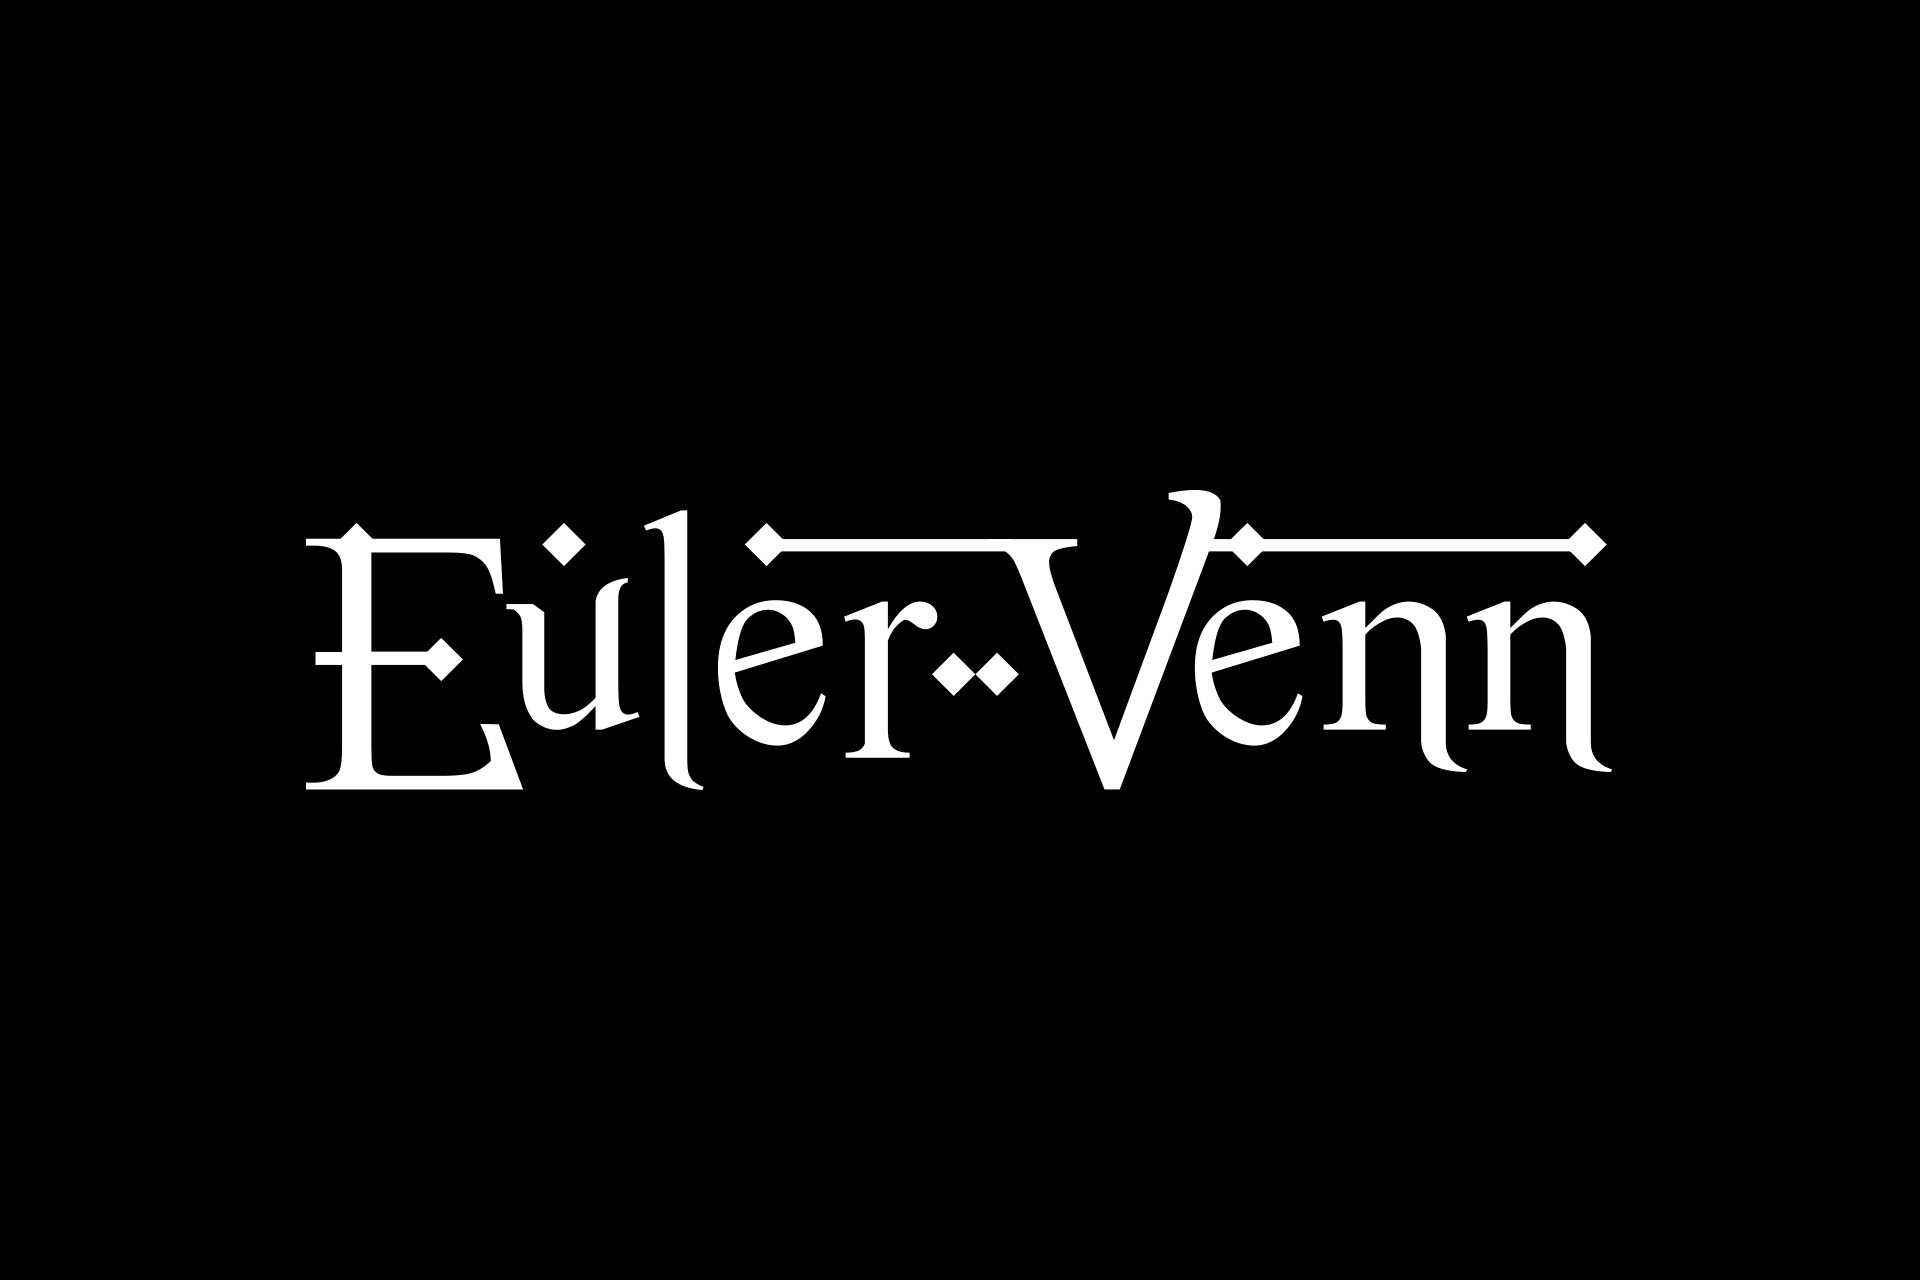 Euler-Venn